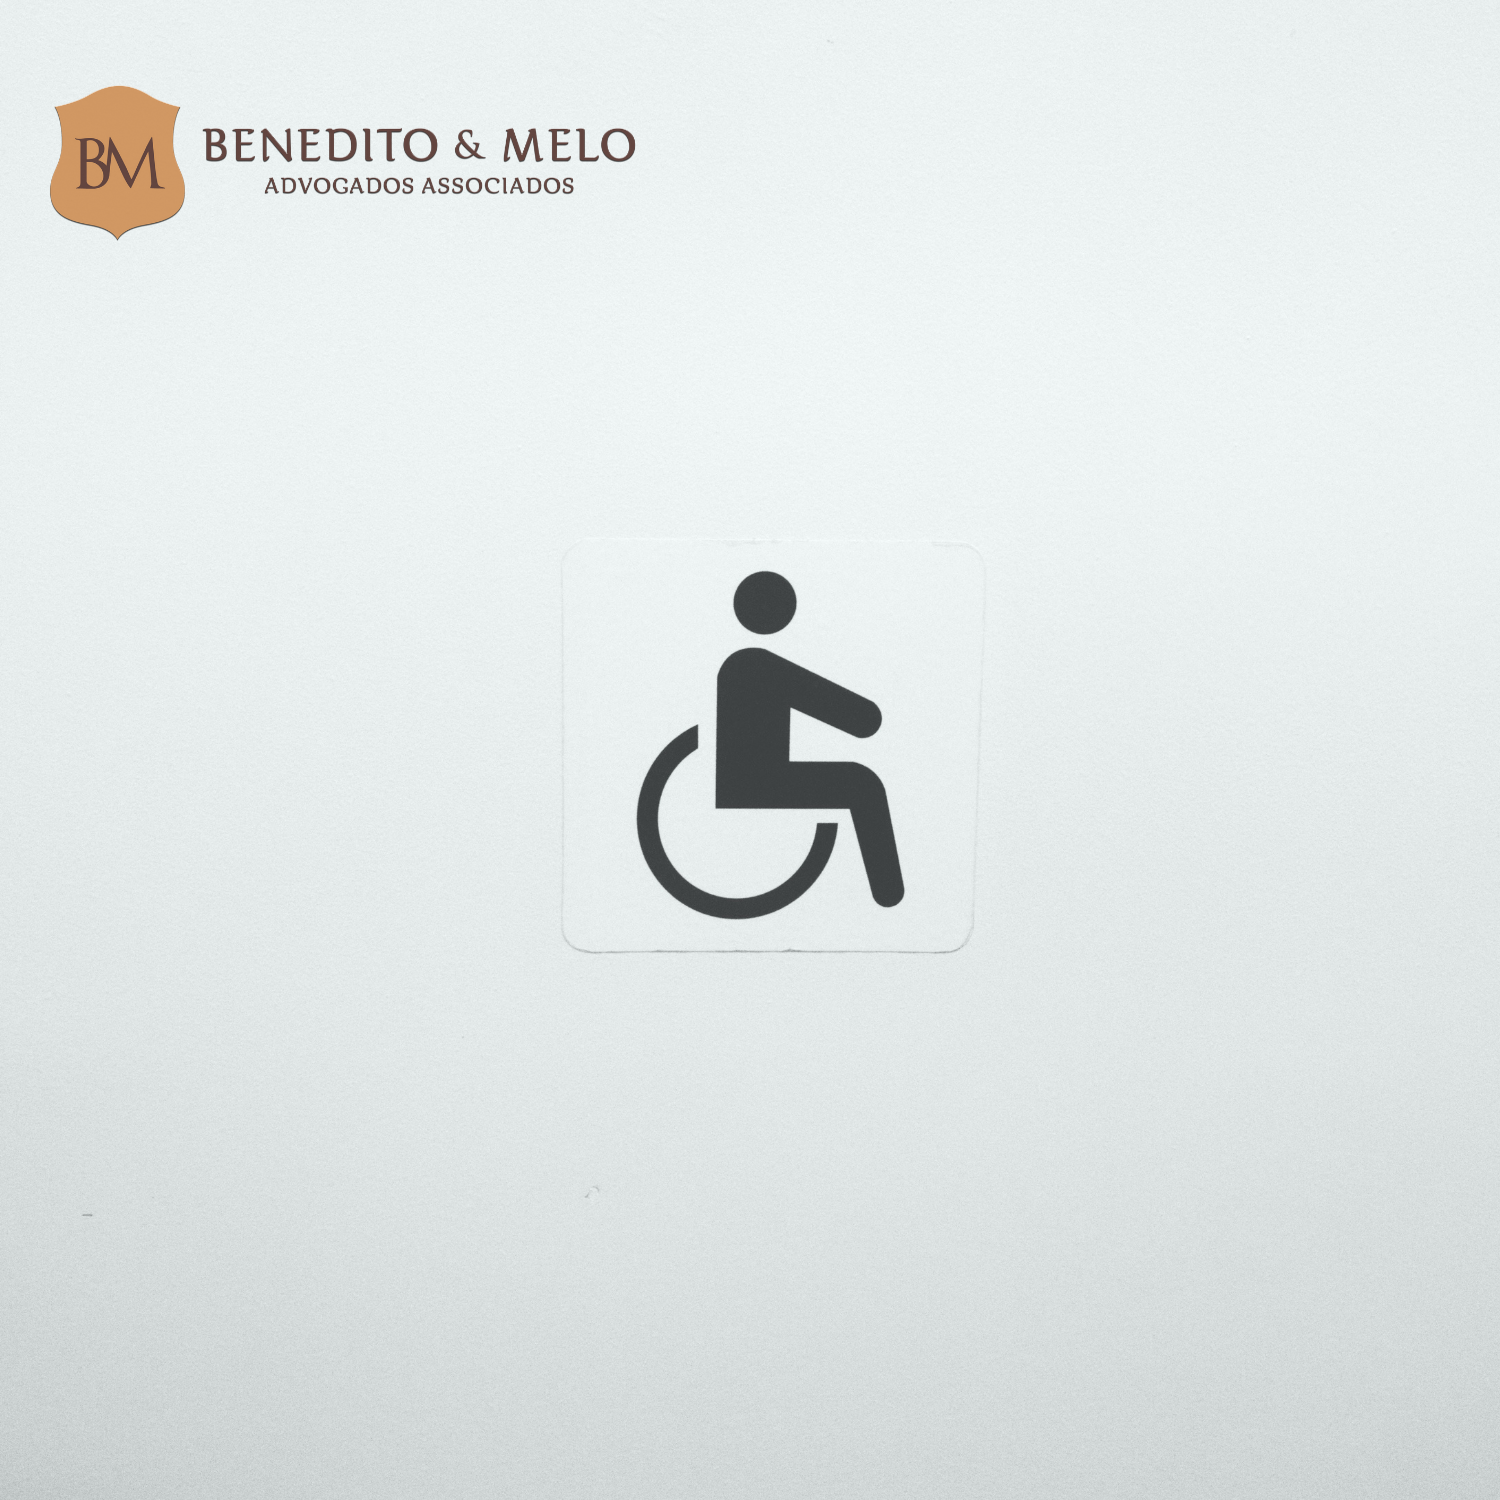 Bancária de São Paulo tem jornada reduzida para cuidar de filho com deficiência